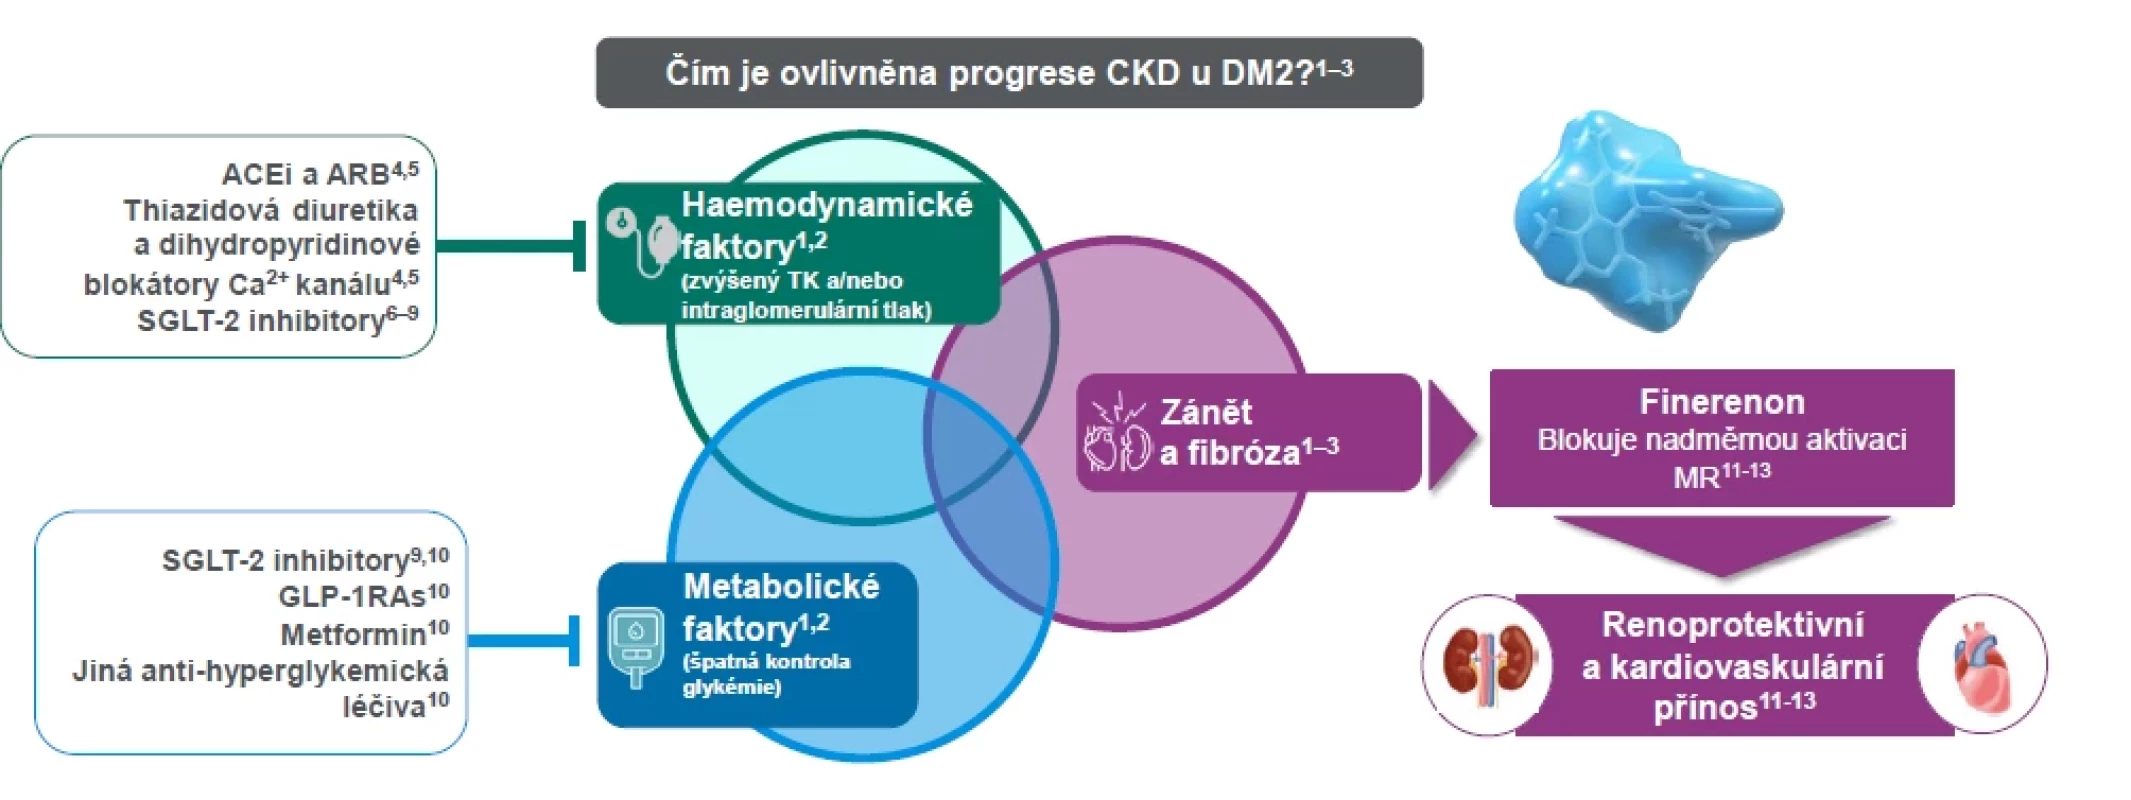 Současné terapie pro pacienty s CKD a DM2 primárně ovlivňující hemodynamické a metabolické faktory